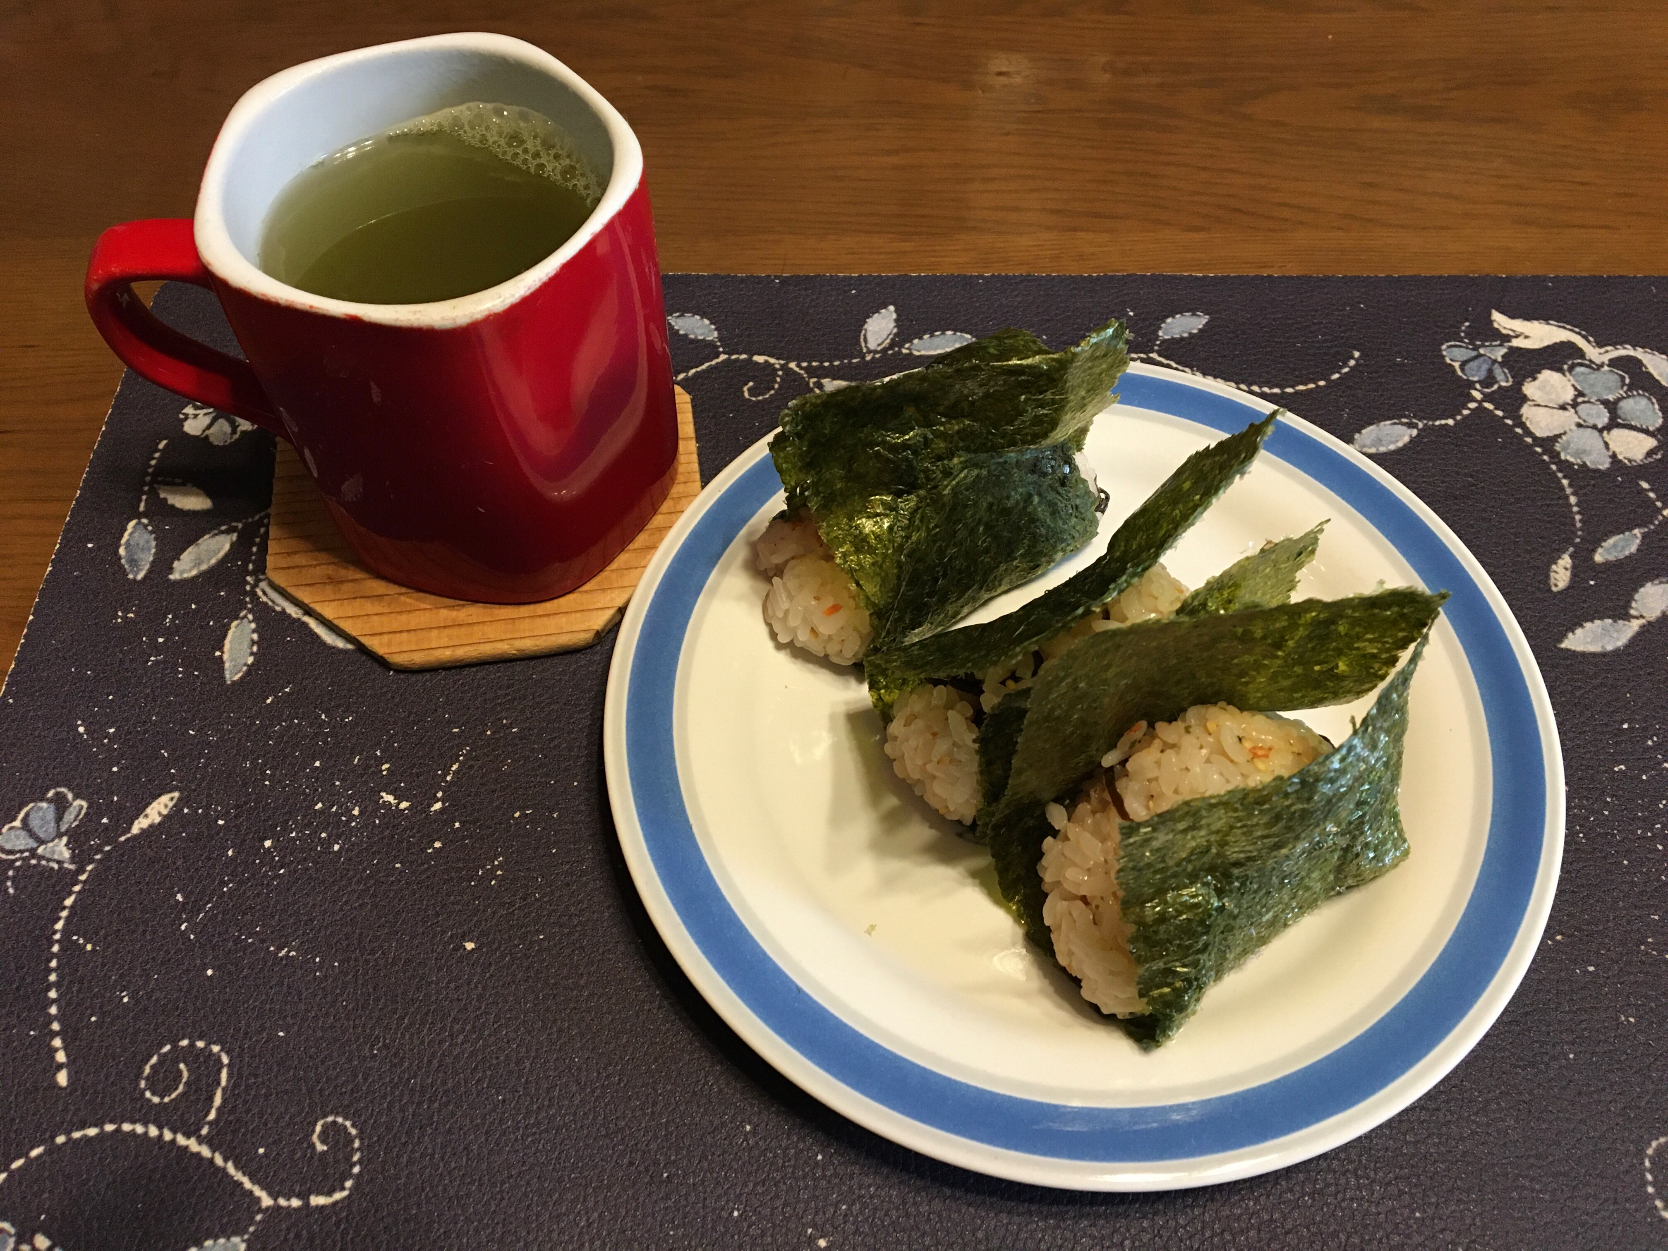 鮭ふりかけと塩昆布の混ぜご飯おにぎり、熱い日本茶(朝ご飯)